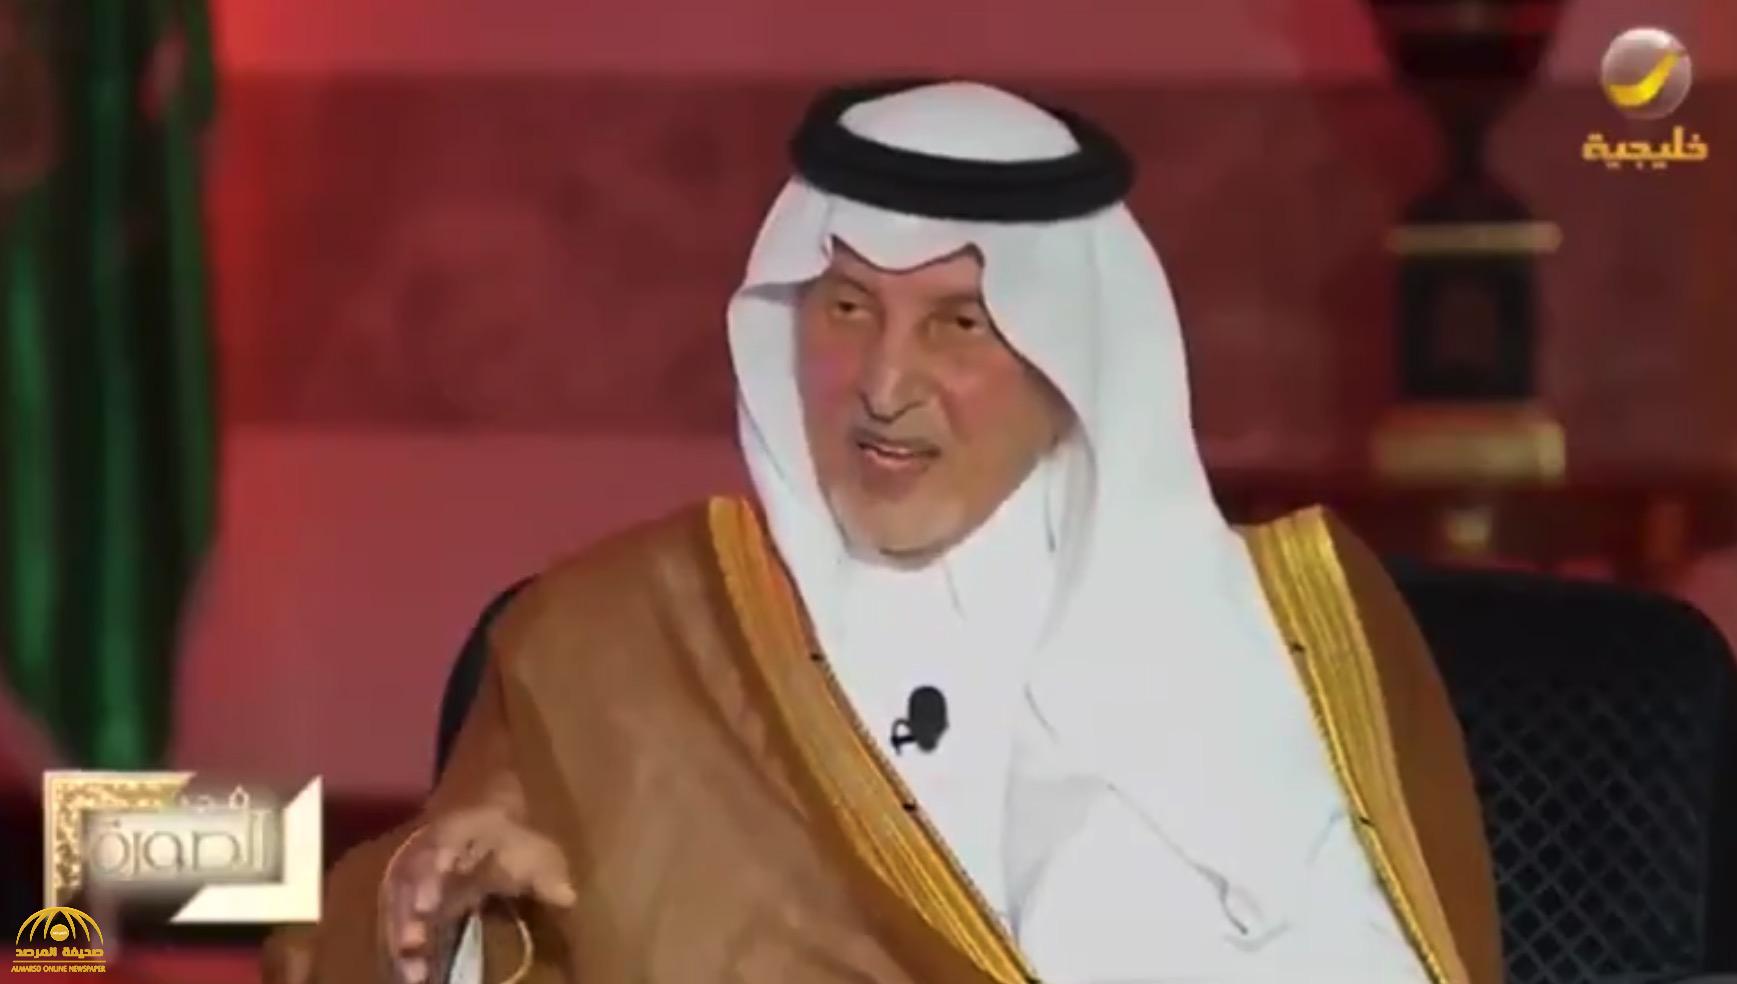 "السؤال كان مفاجئًا وصعبًا".. بالفيديو: الأمير خالد الفيصل يكشف عن "أول اختبار" له من الملك عبد العزيز وهكذا "أجاب عليه"